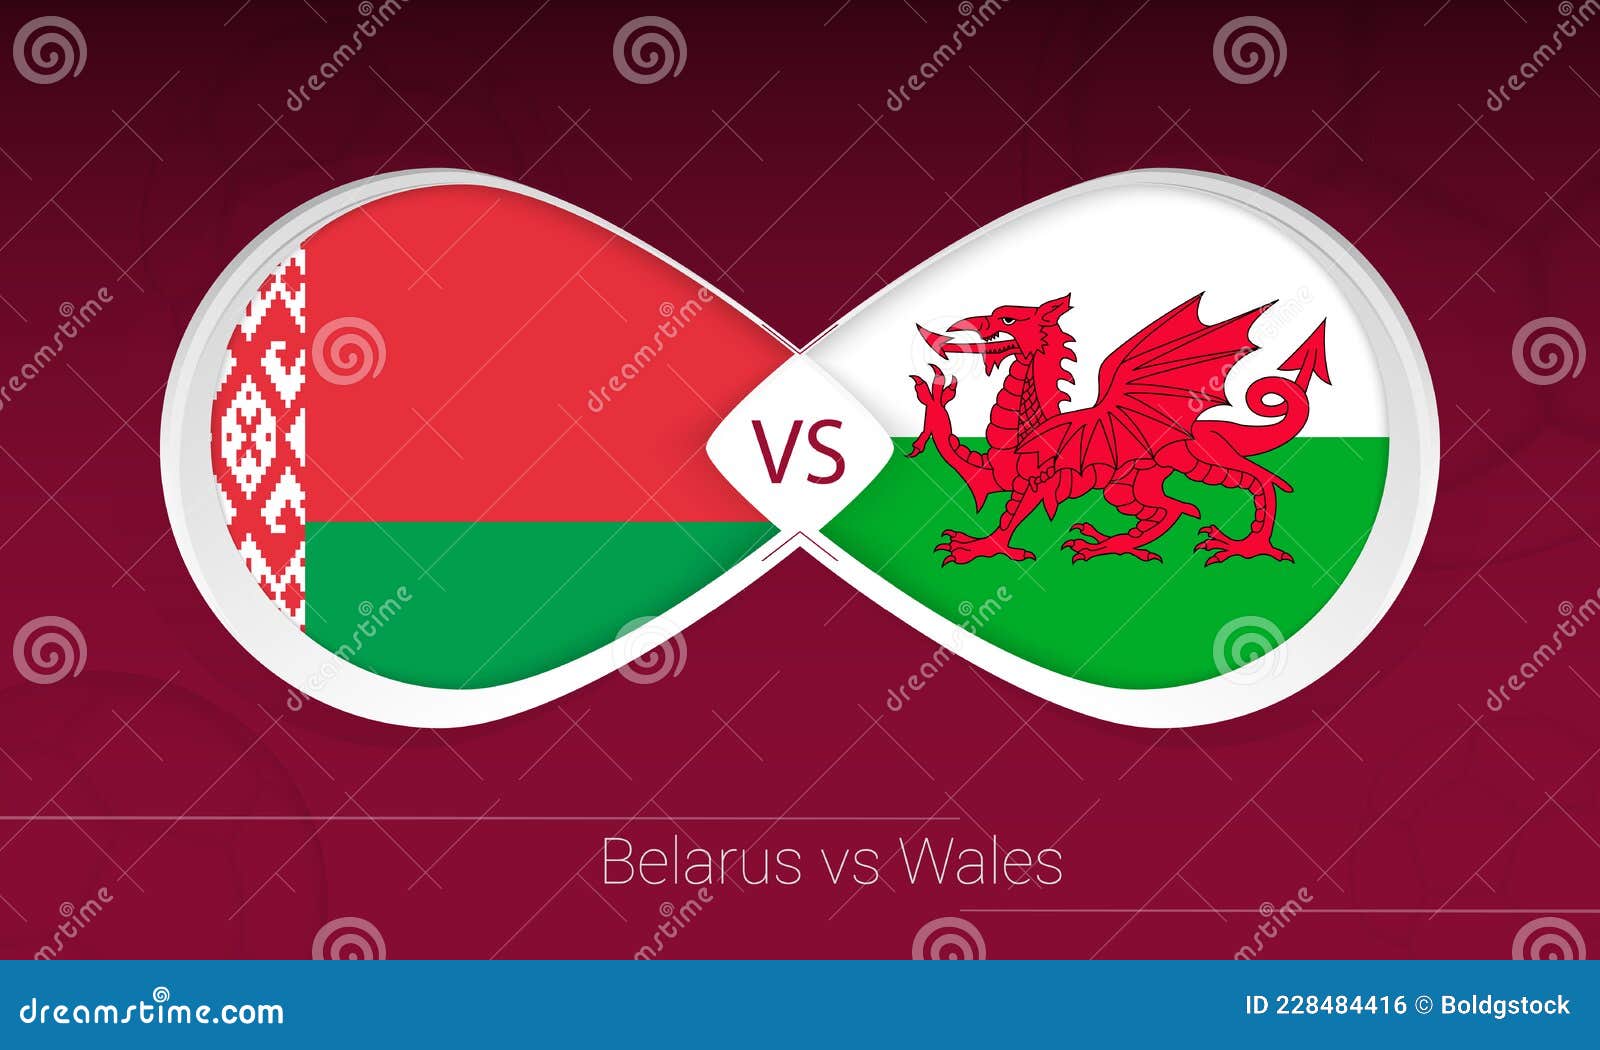 Wales vs belarus